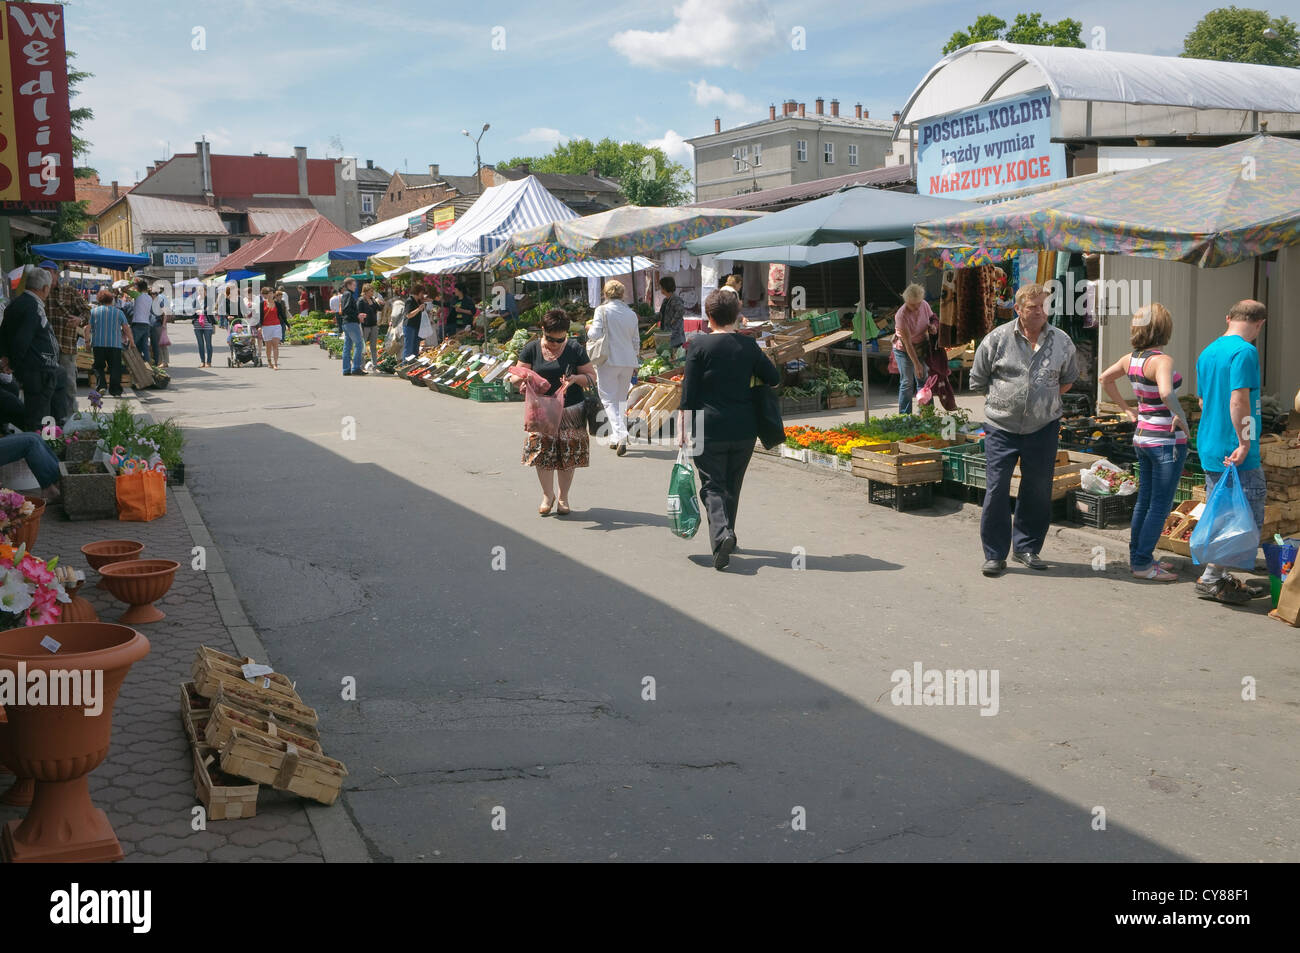 Bauern-Markt in Wadowice, Polen. Stockfoto